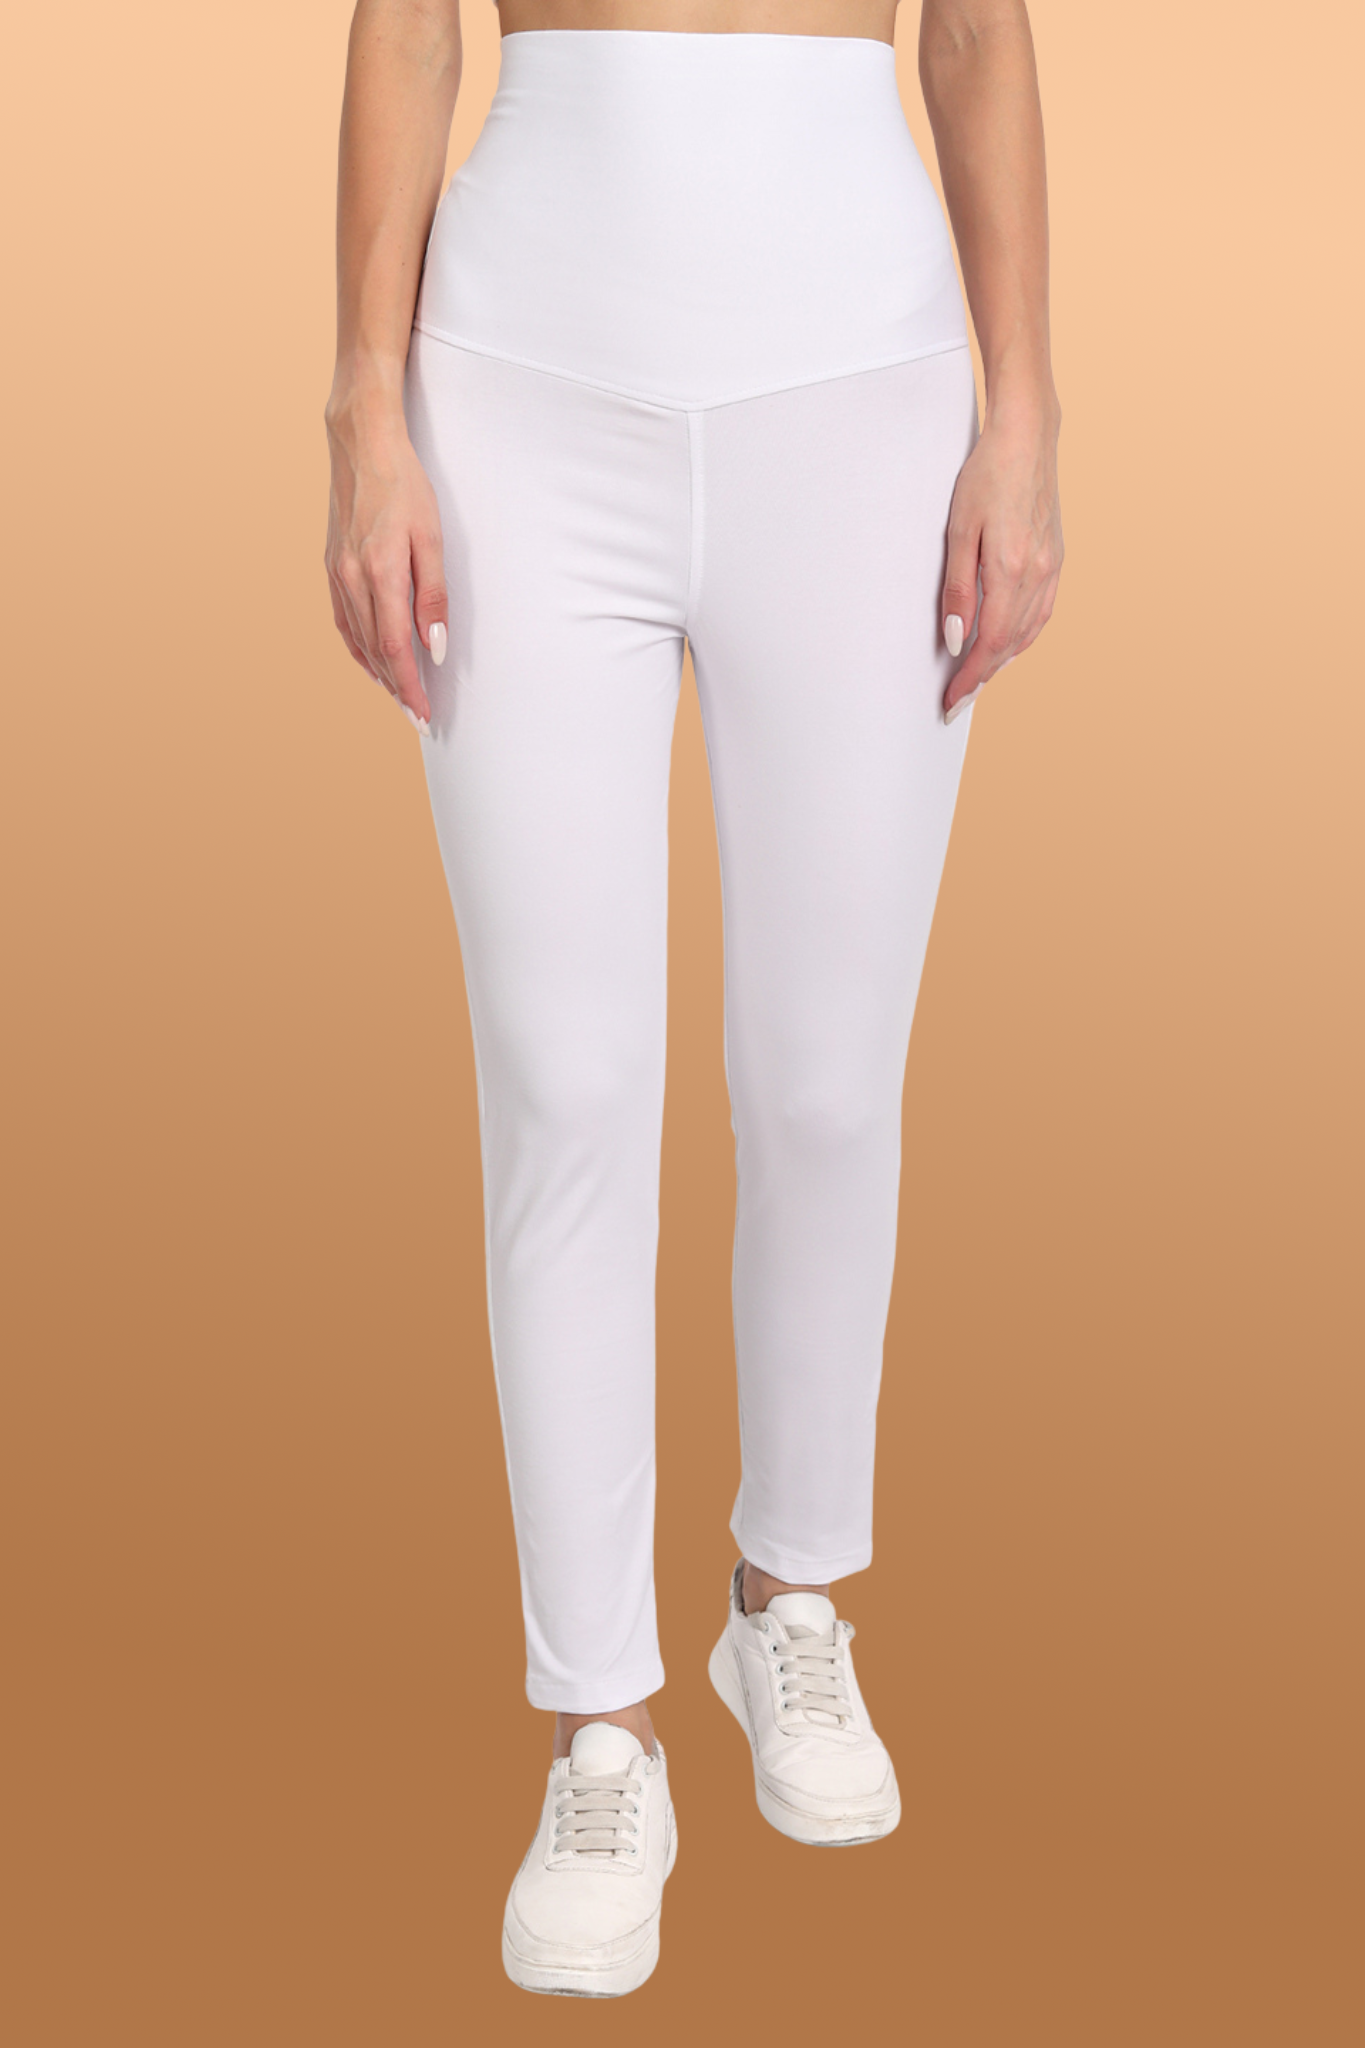 Solid Color Jeggings XS-7xl Women's Modal Cotton Leggings Pant